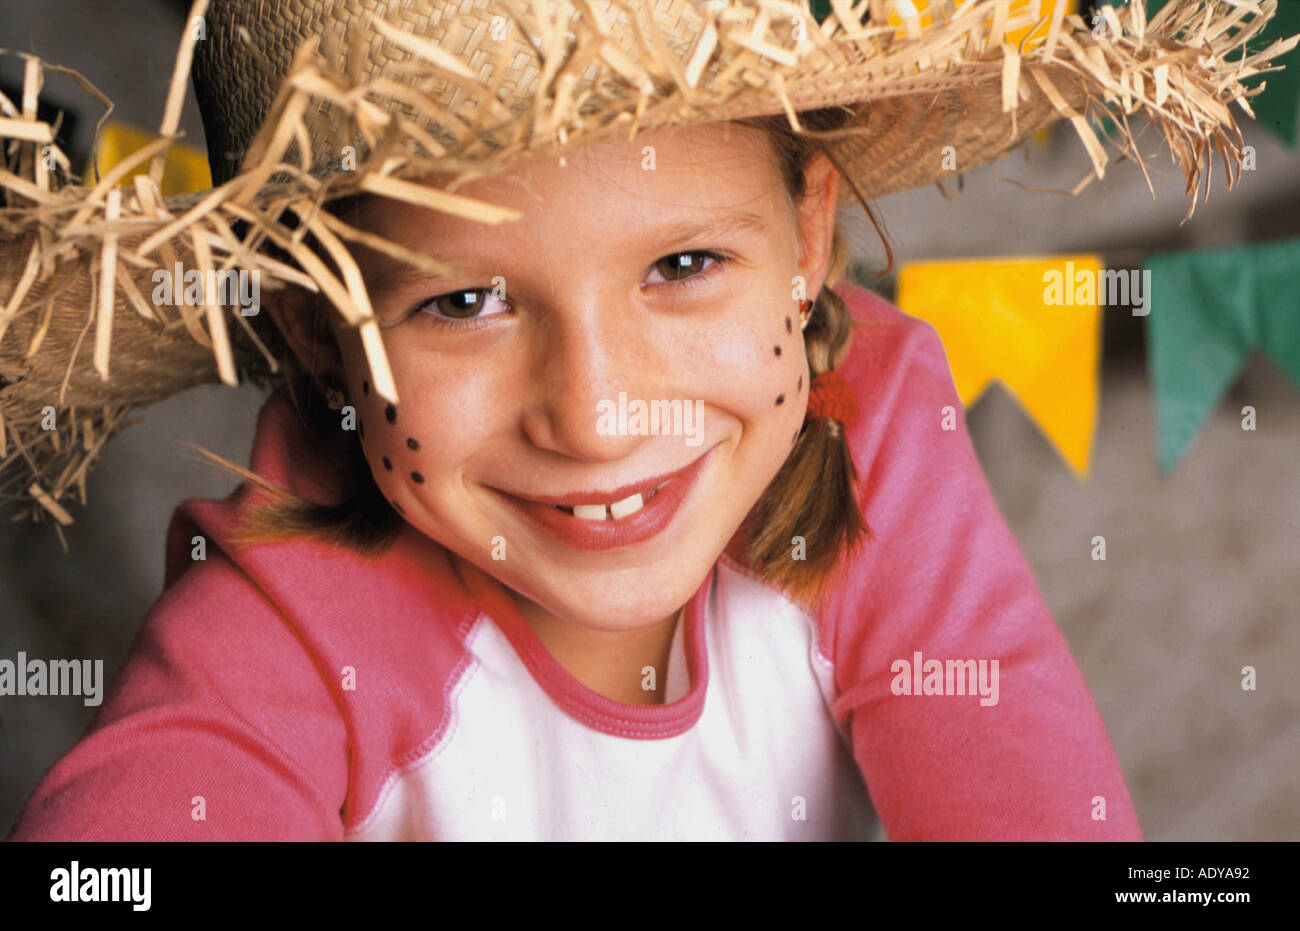 Feiern ich junge Mädchen kleine weiße brasilianischen Lächeln Lächeln Wicker Hut Fahnen Festa Festas Junina Juni feste 5 10 eigen- Stockfoto